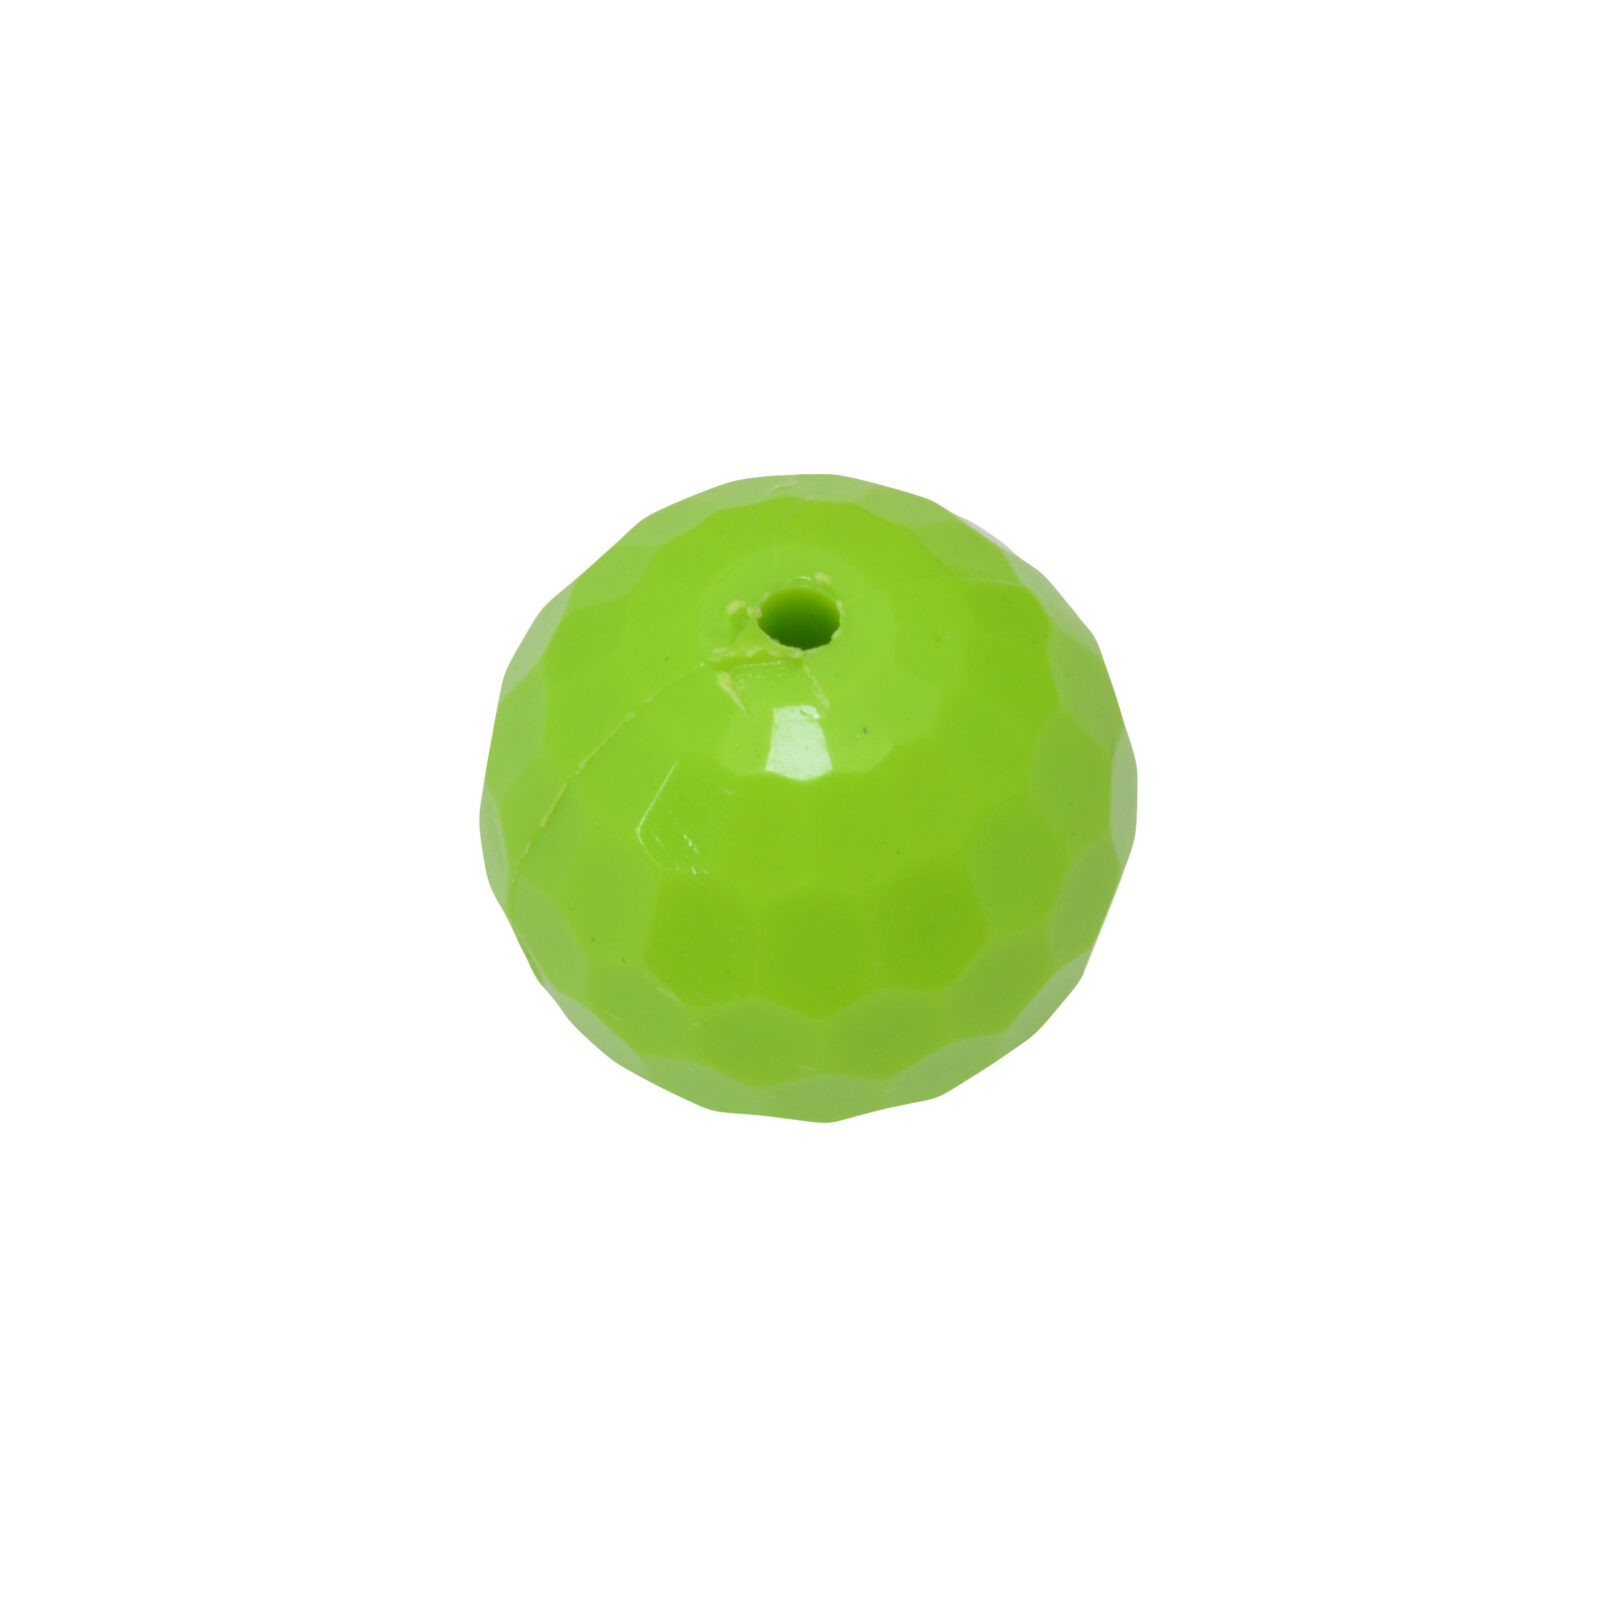 Groene ronde kunststof kraal